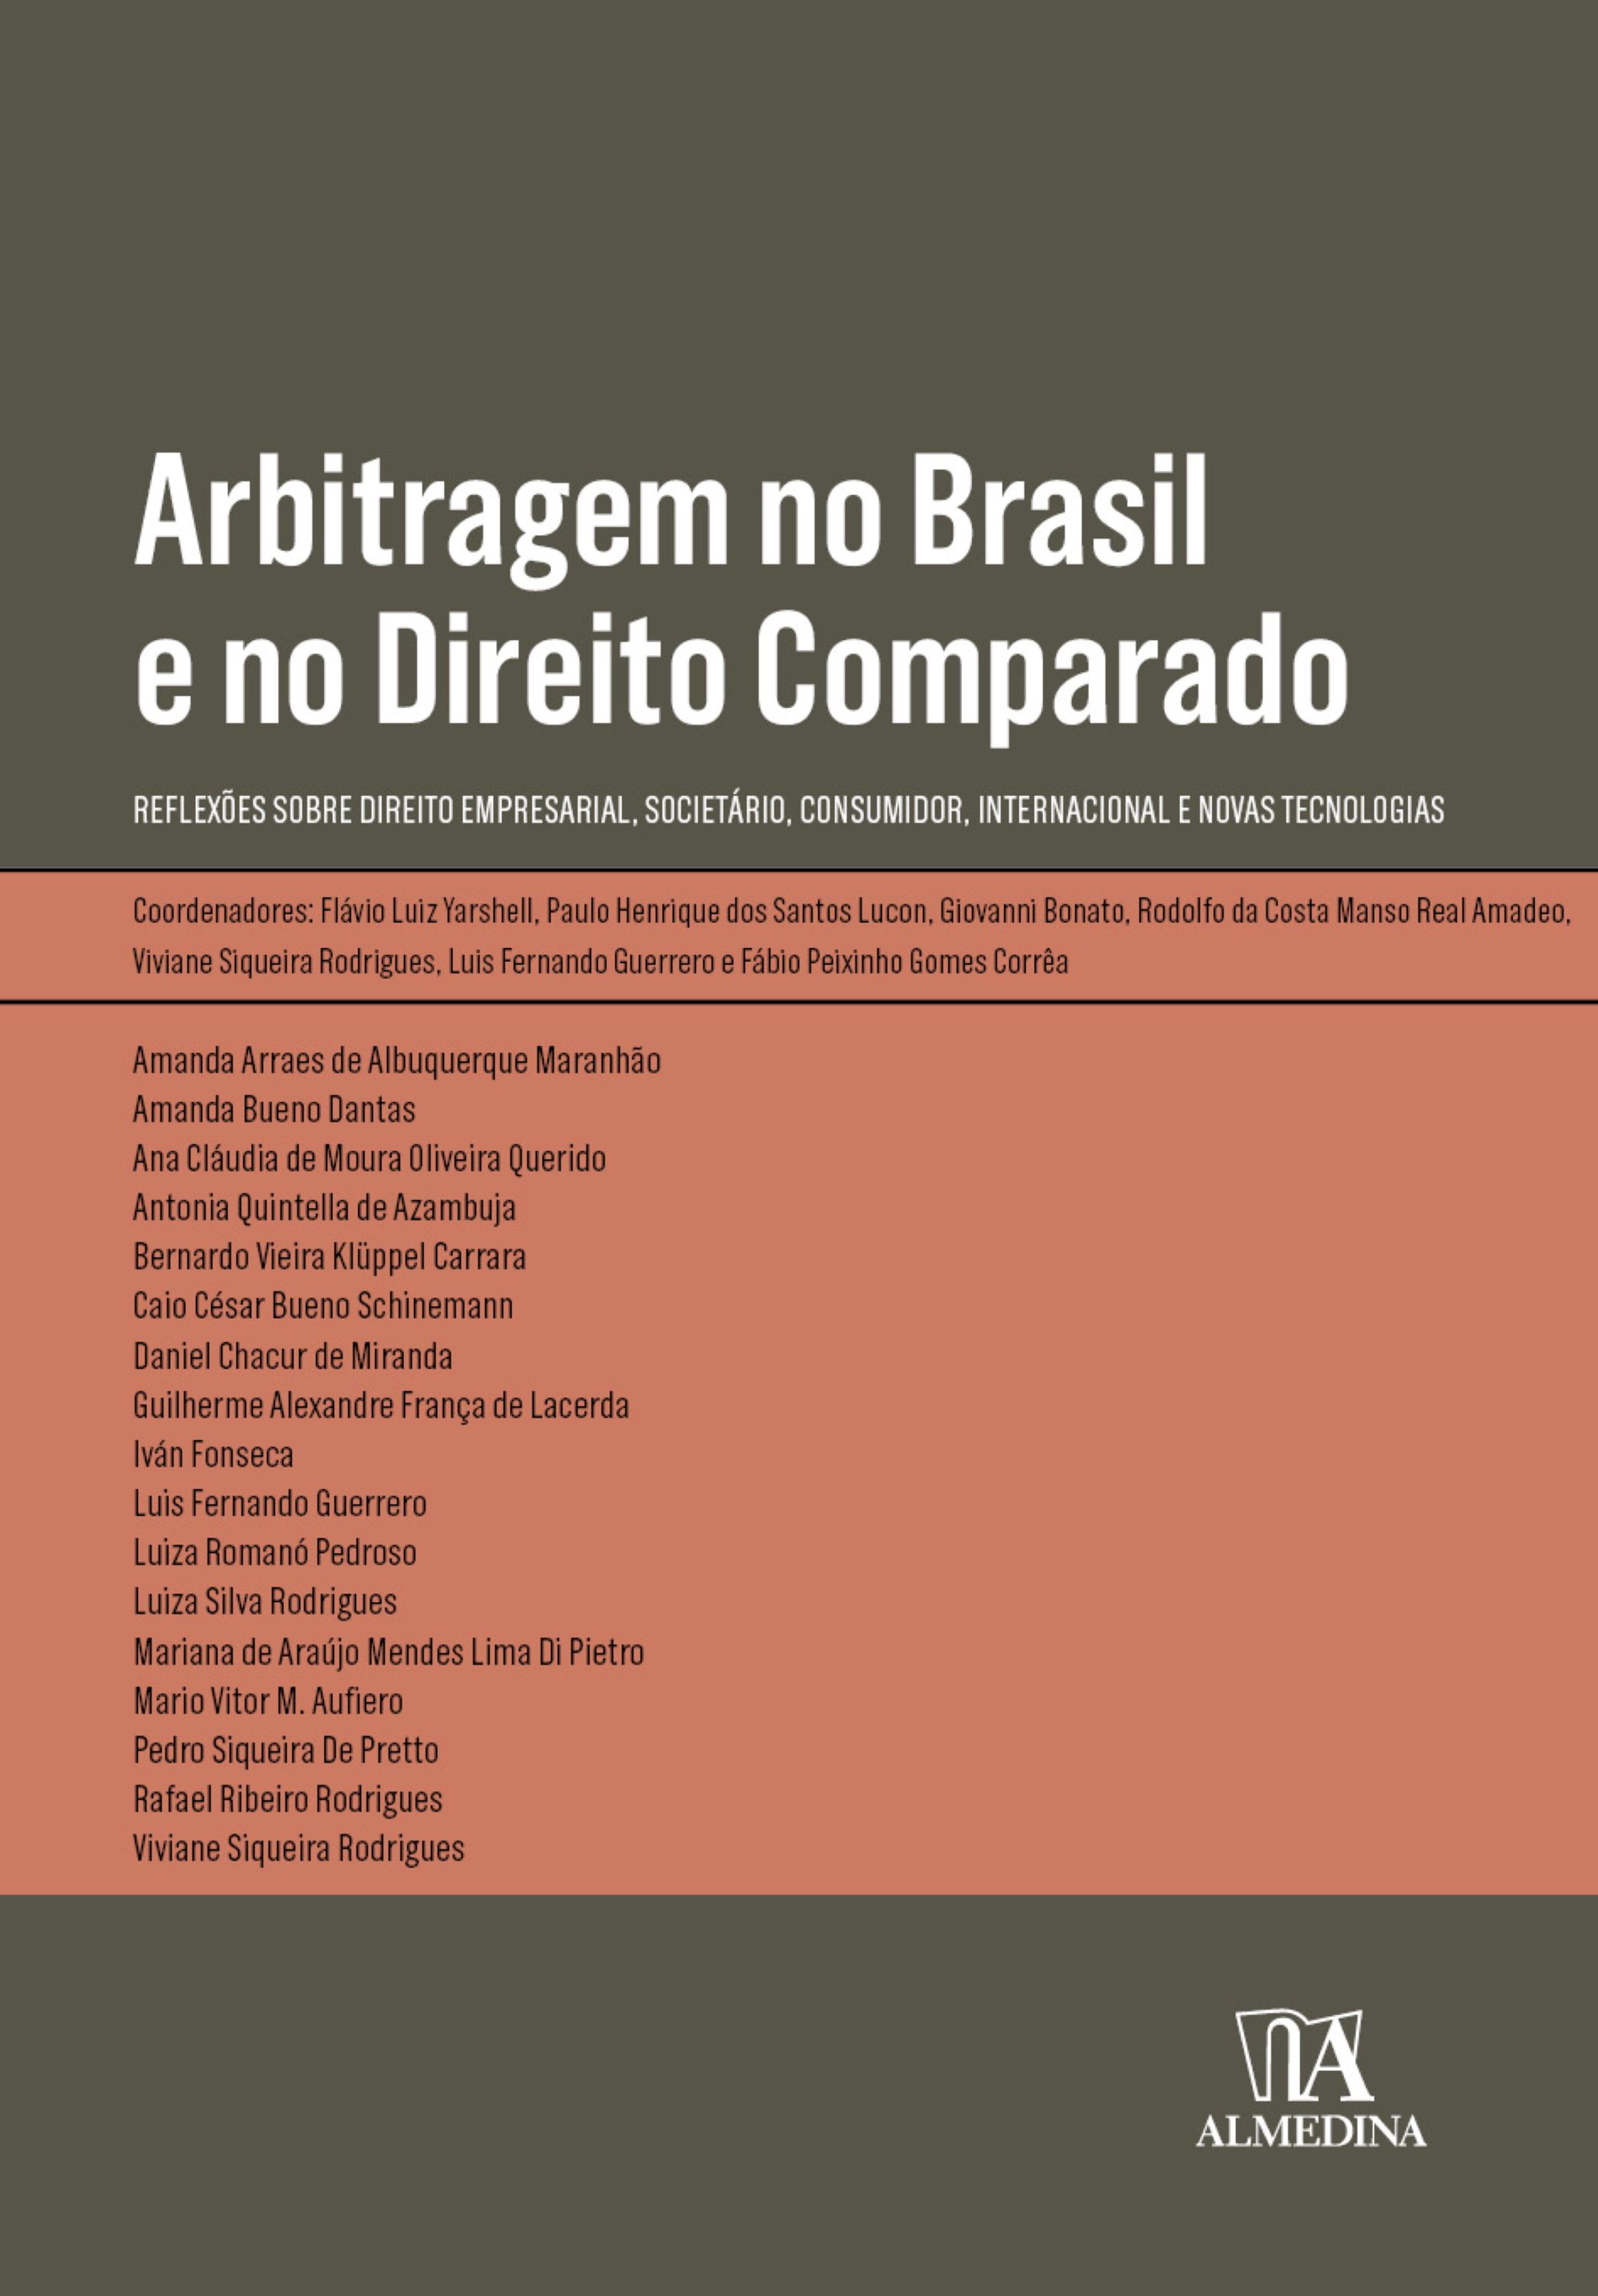 Arbitragem no Brasil e no Direito Comparado